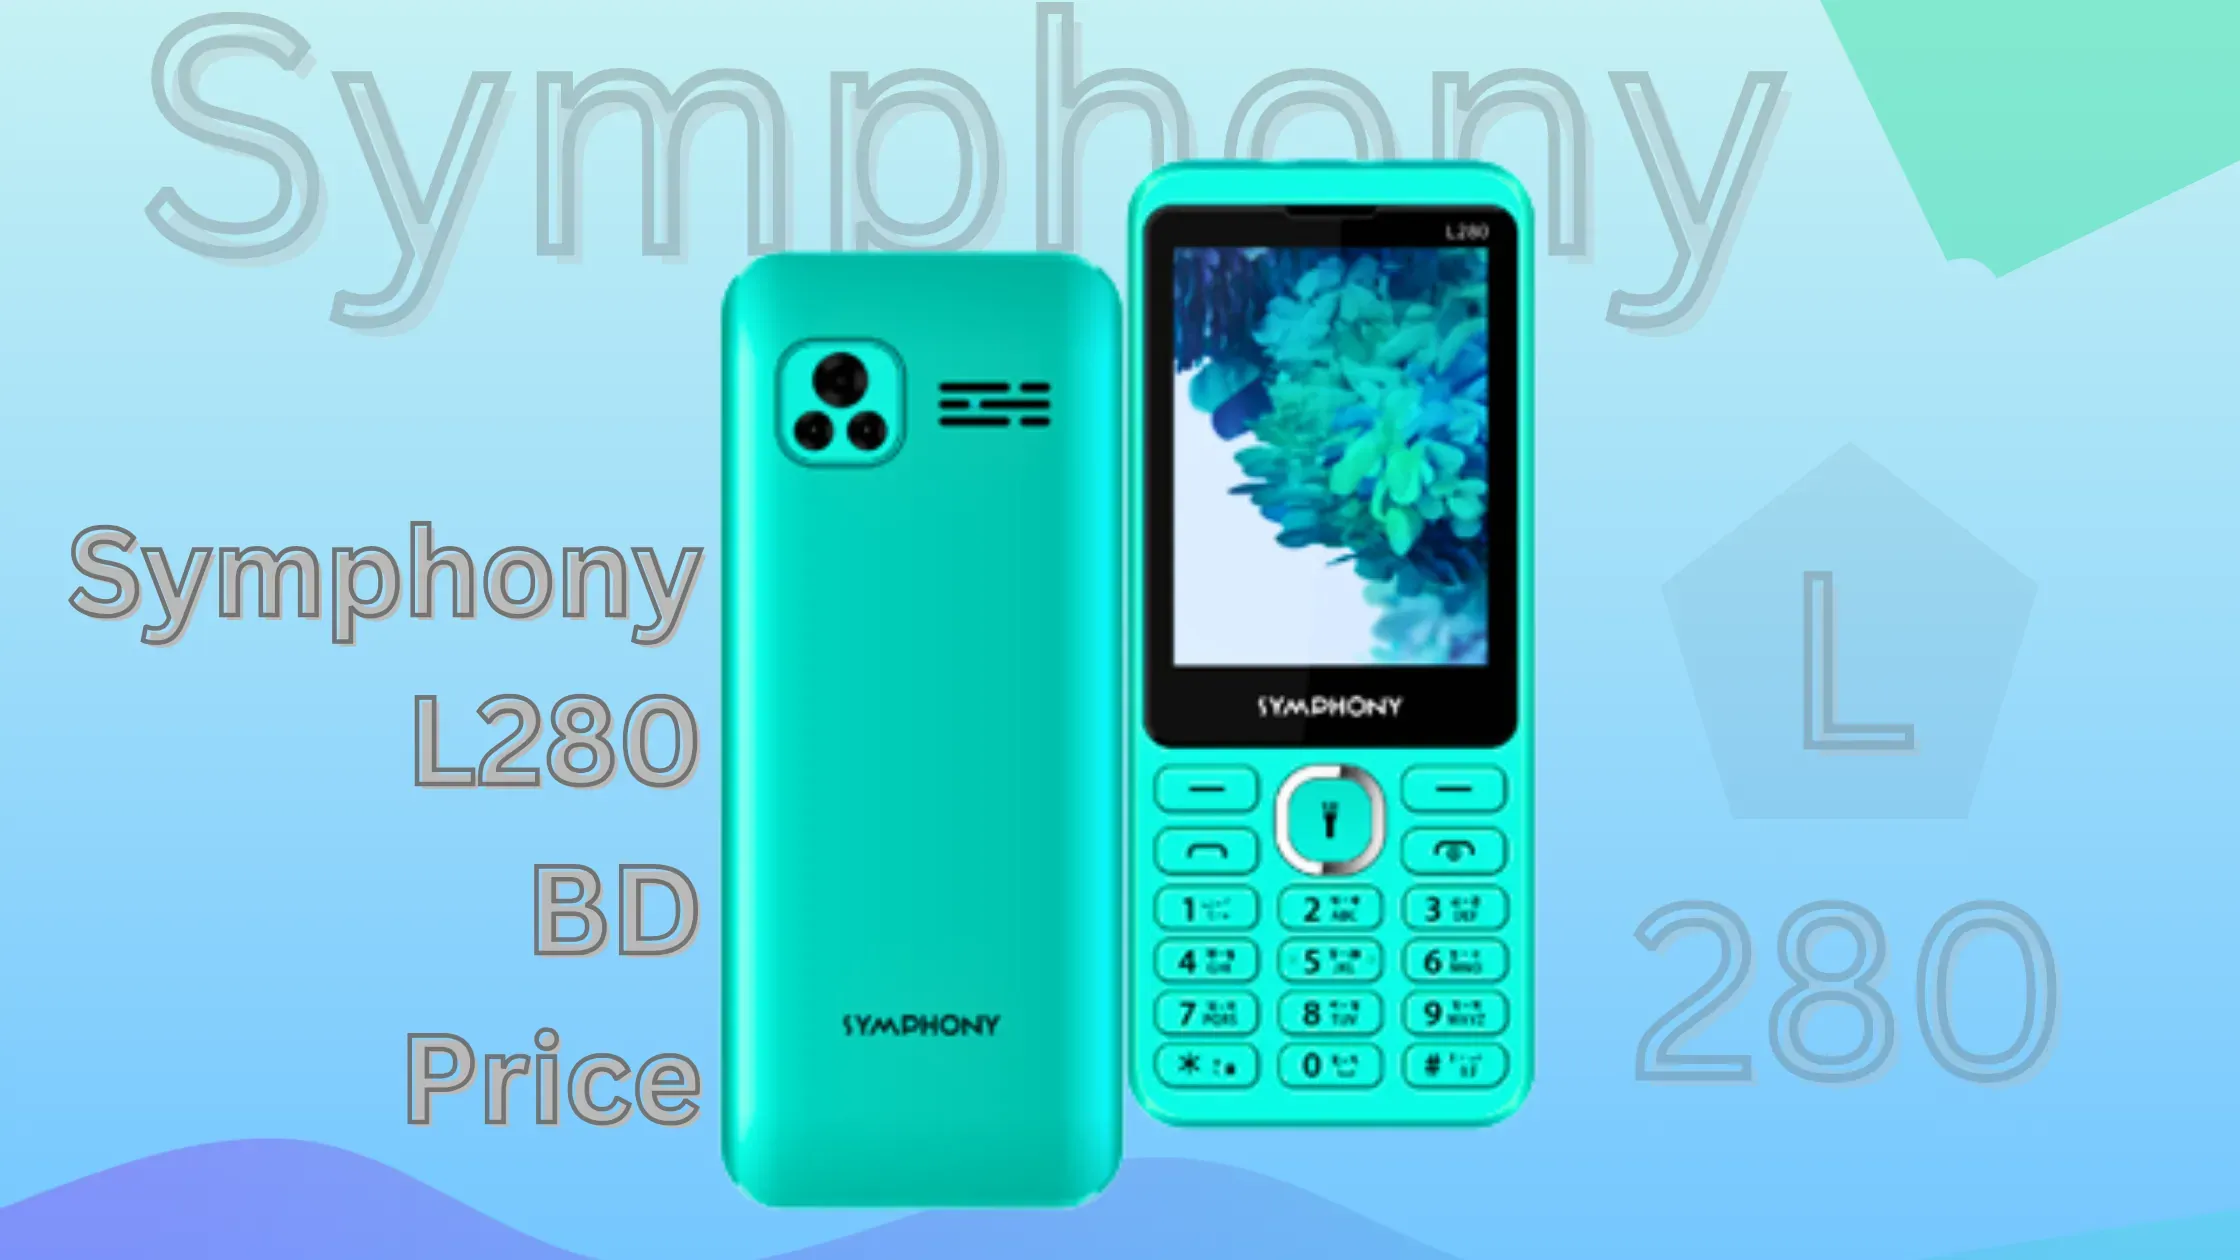 Symphony L280 BD Price